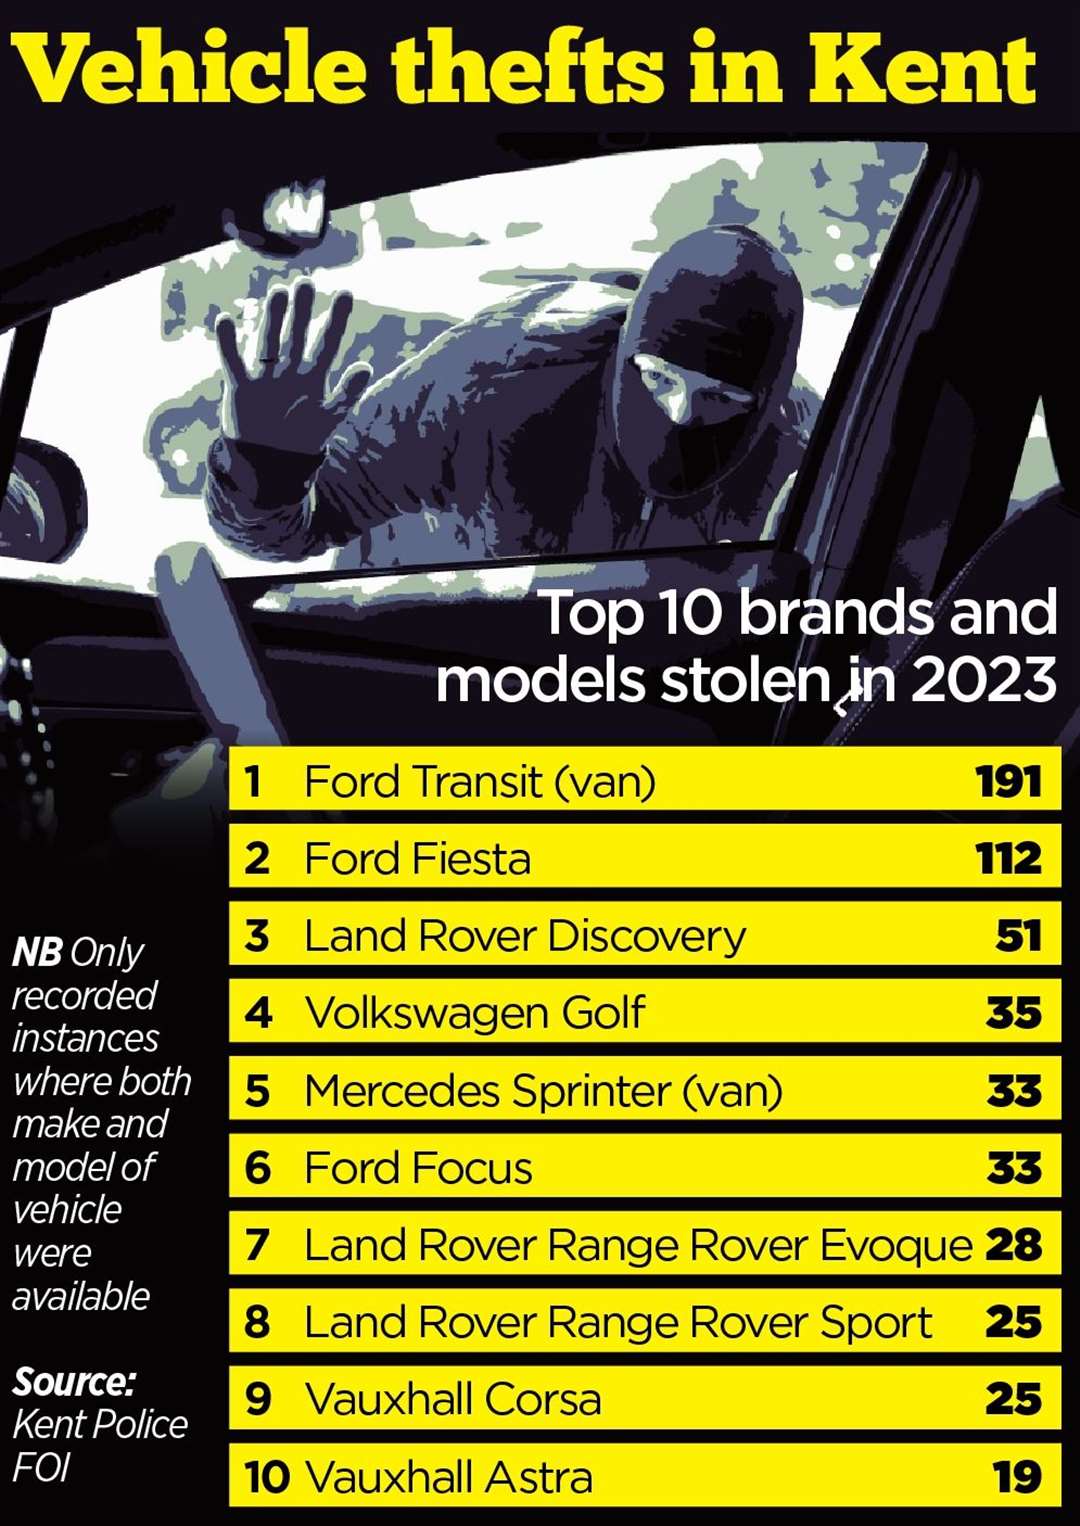 The vehicles stolen in Kent in 2023